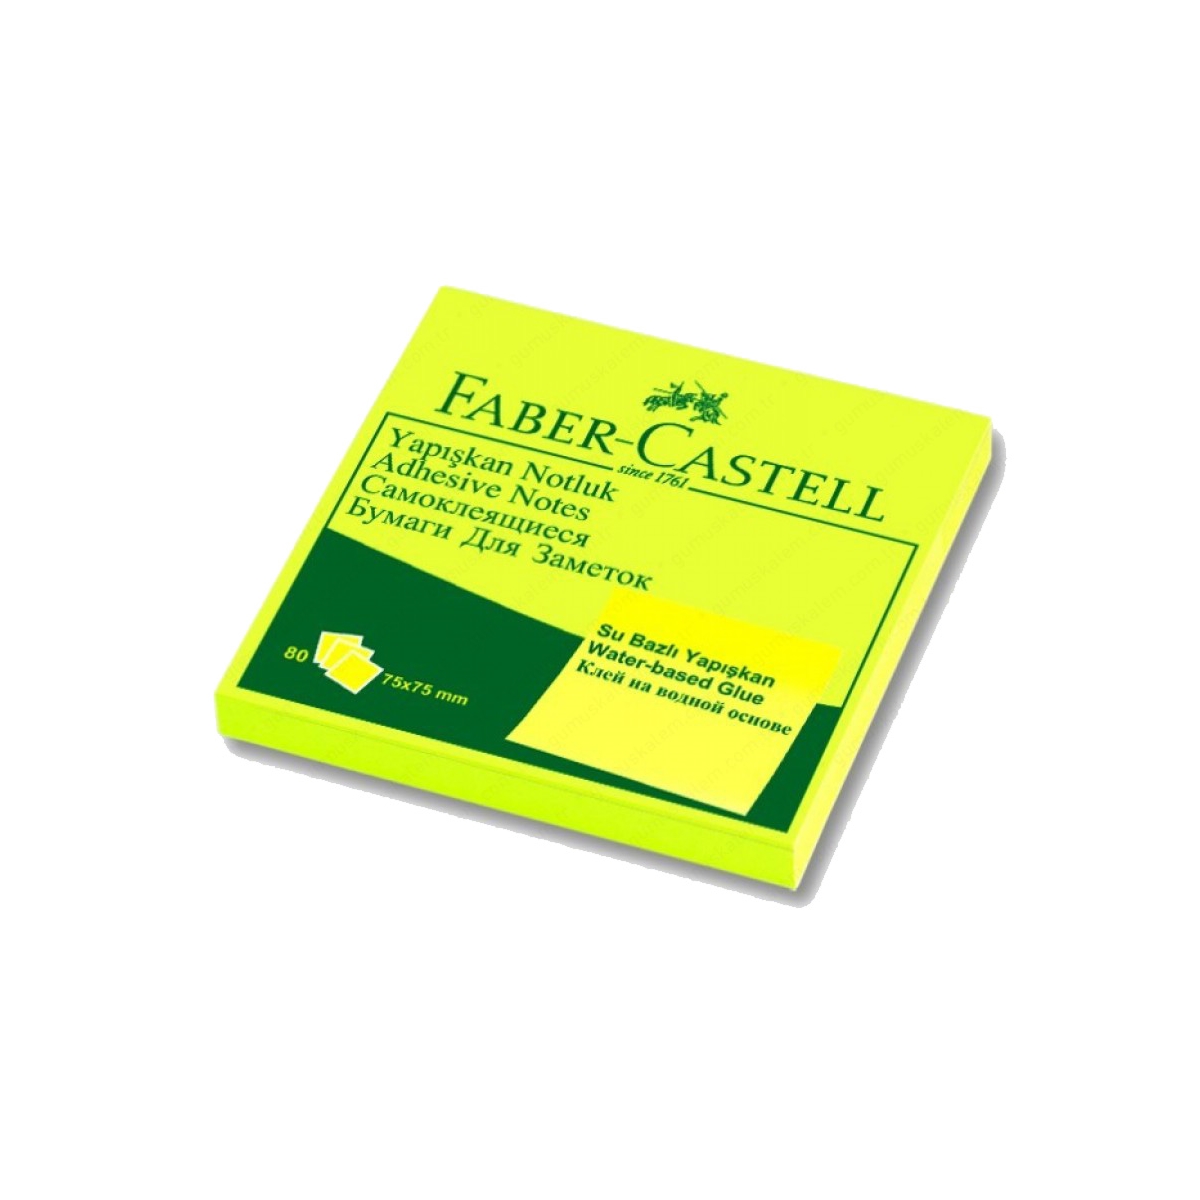 Faber-Castell Yapışkan Notluk 75x75mm, Fosforlu Sarı ADEL